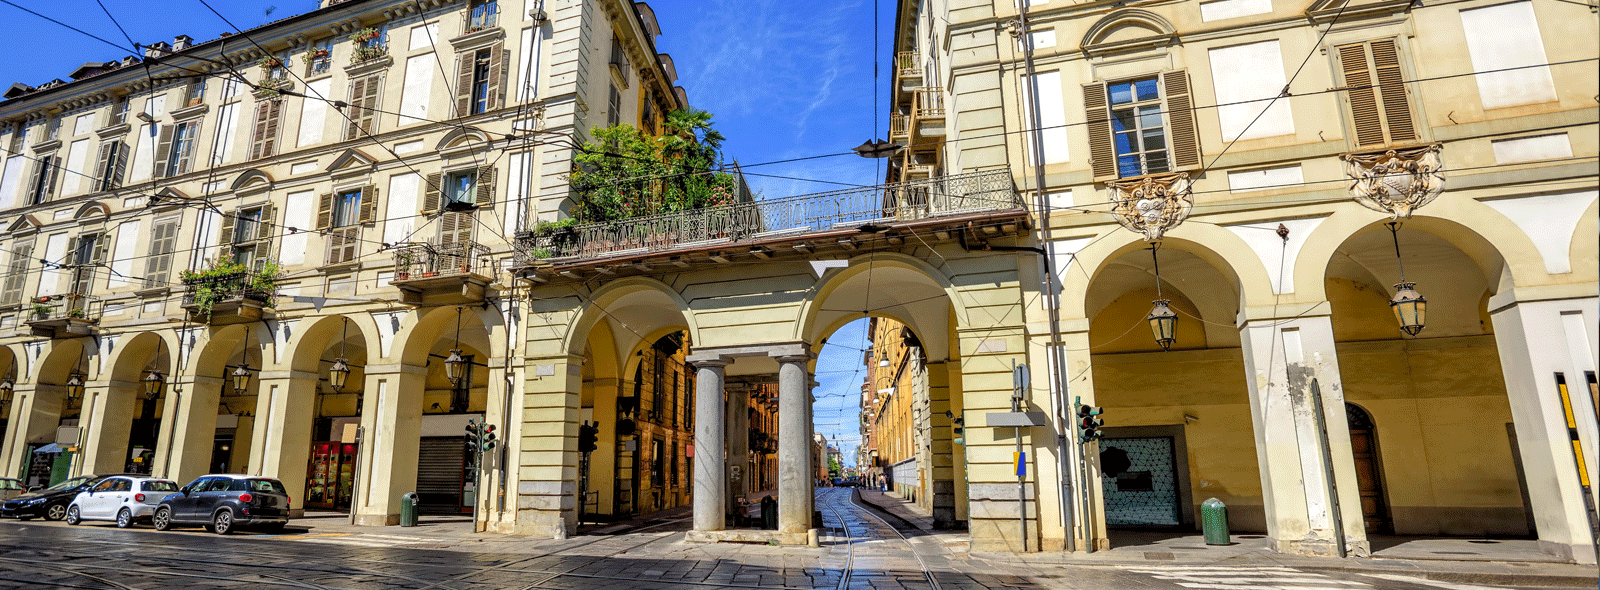 Come sta cambiando il mercato delle case a Torino: due eventi storici nel 2018